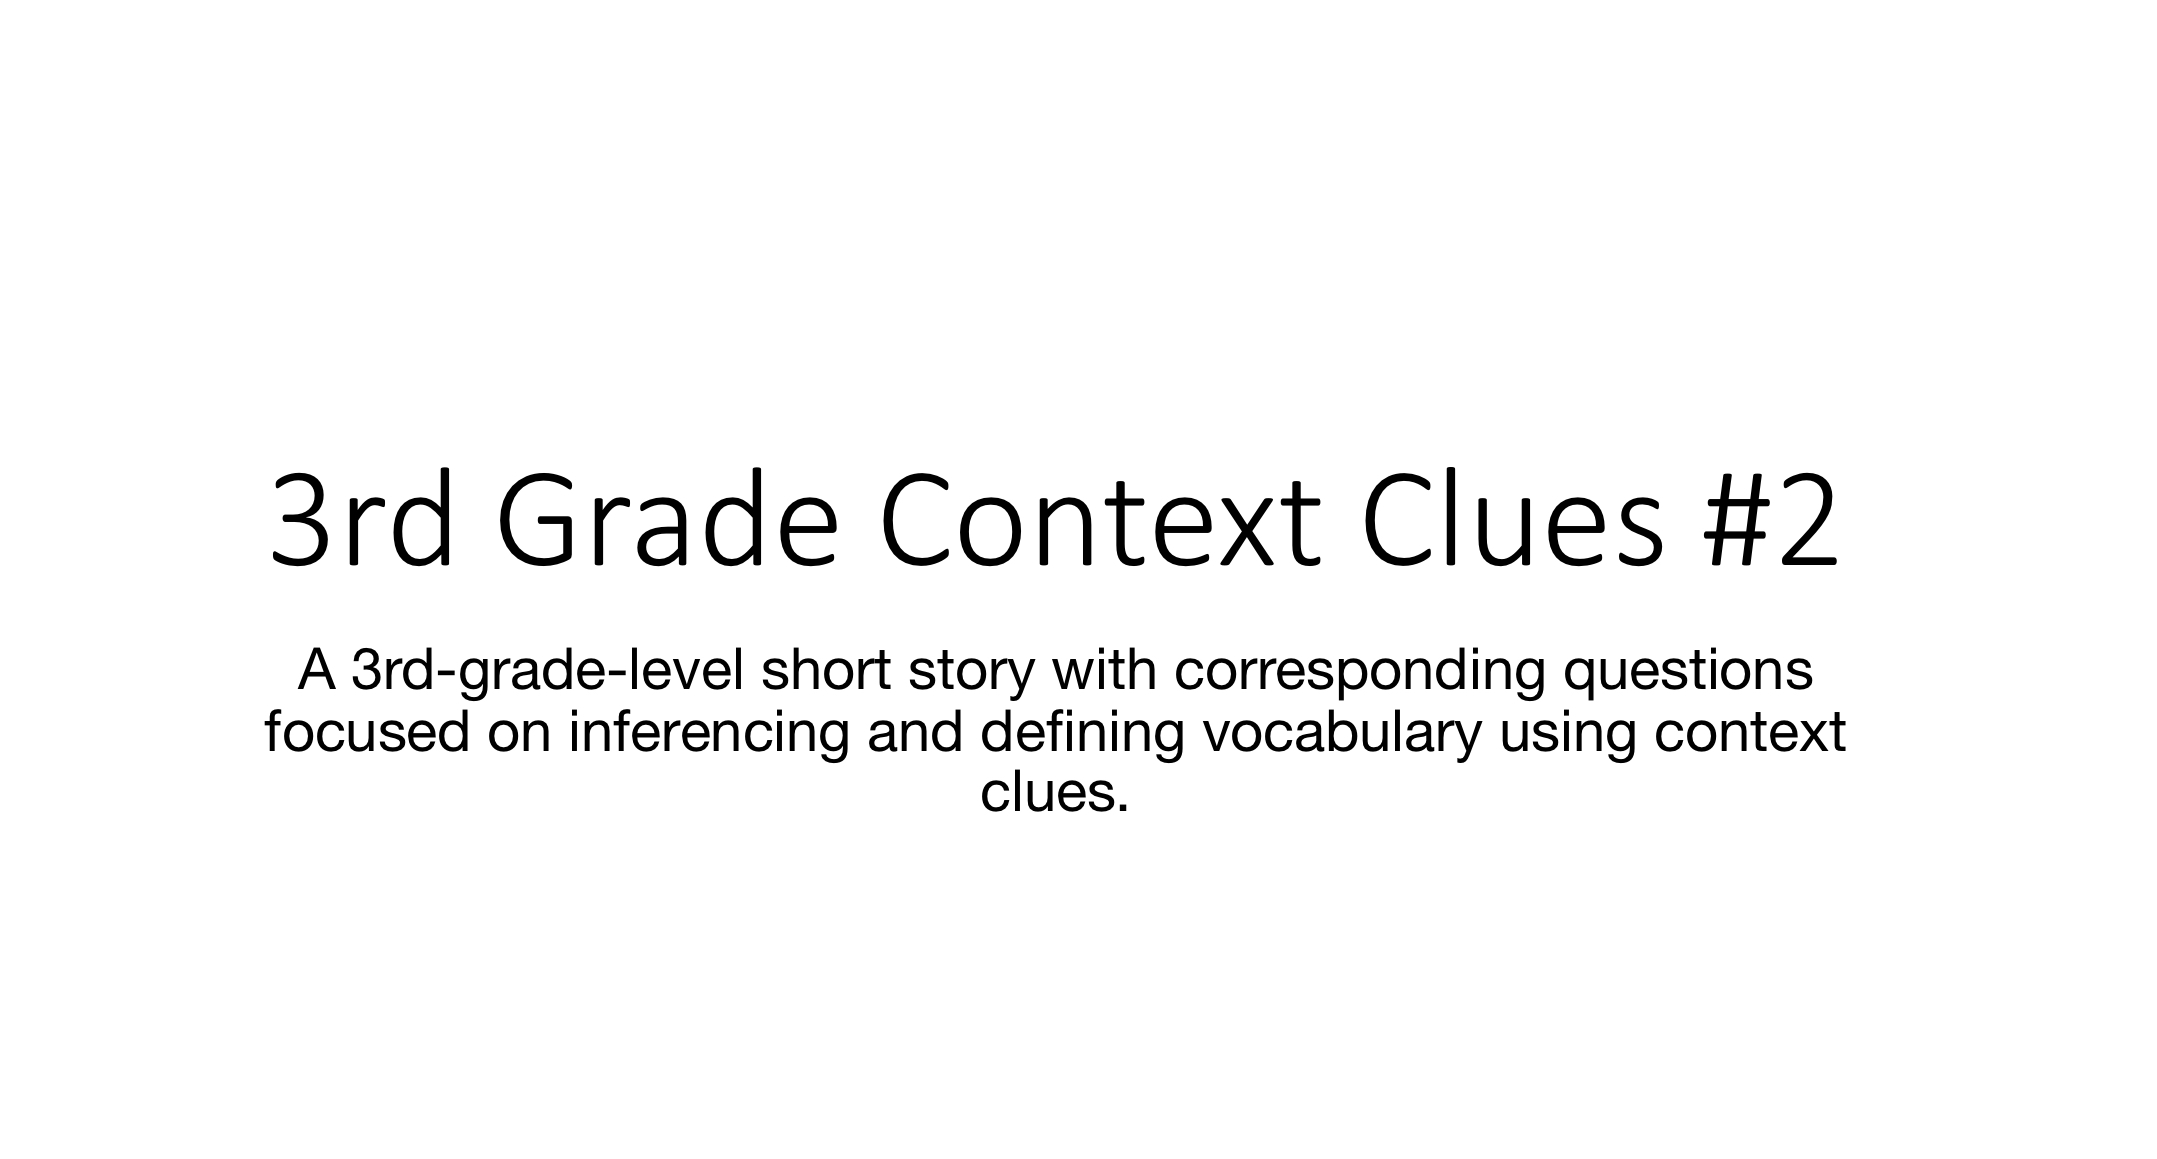 3rd Grade Context Clues #2 image